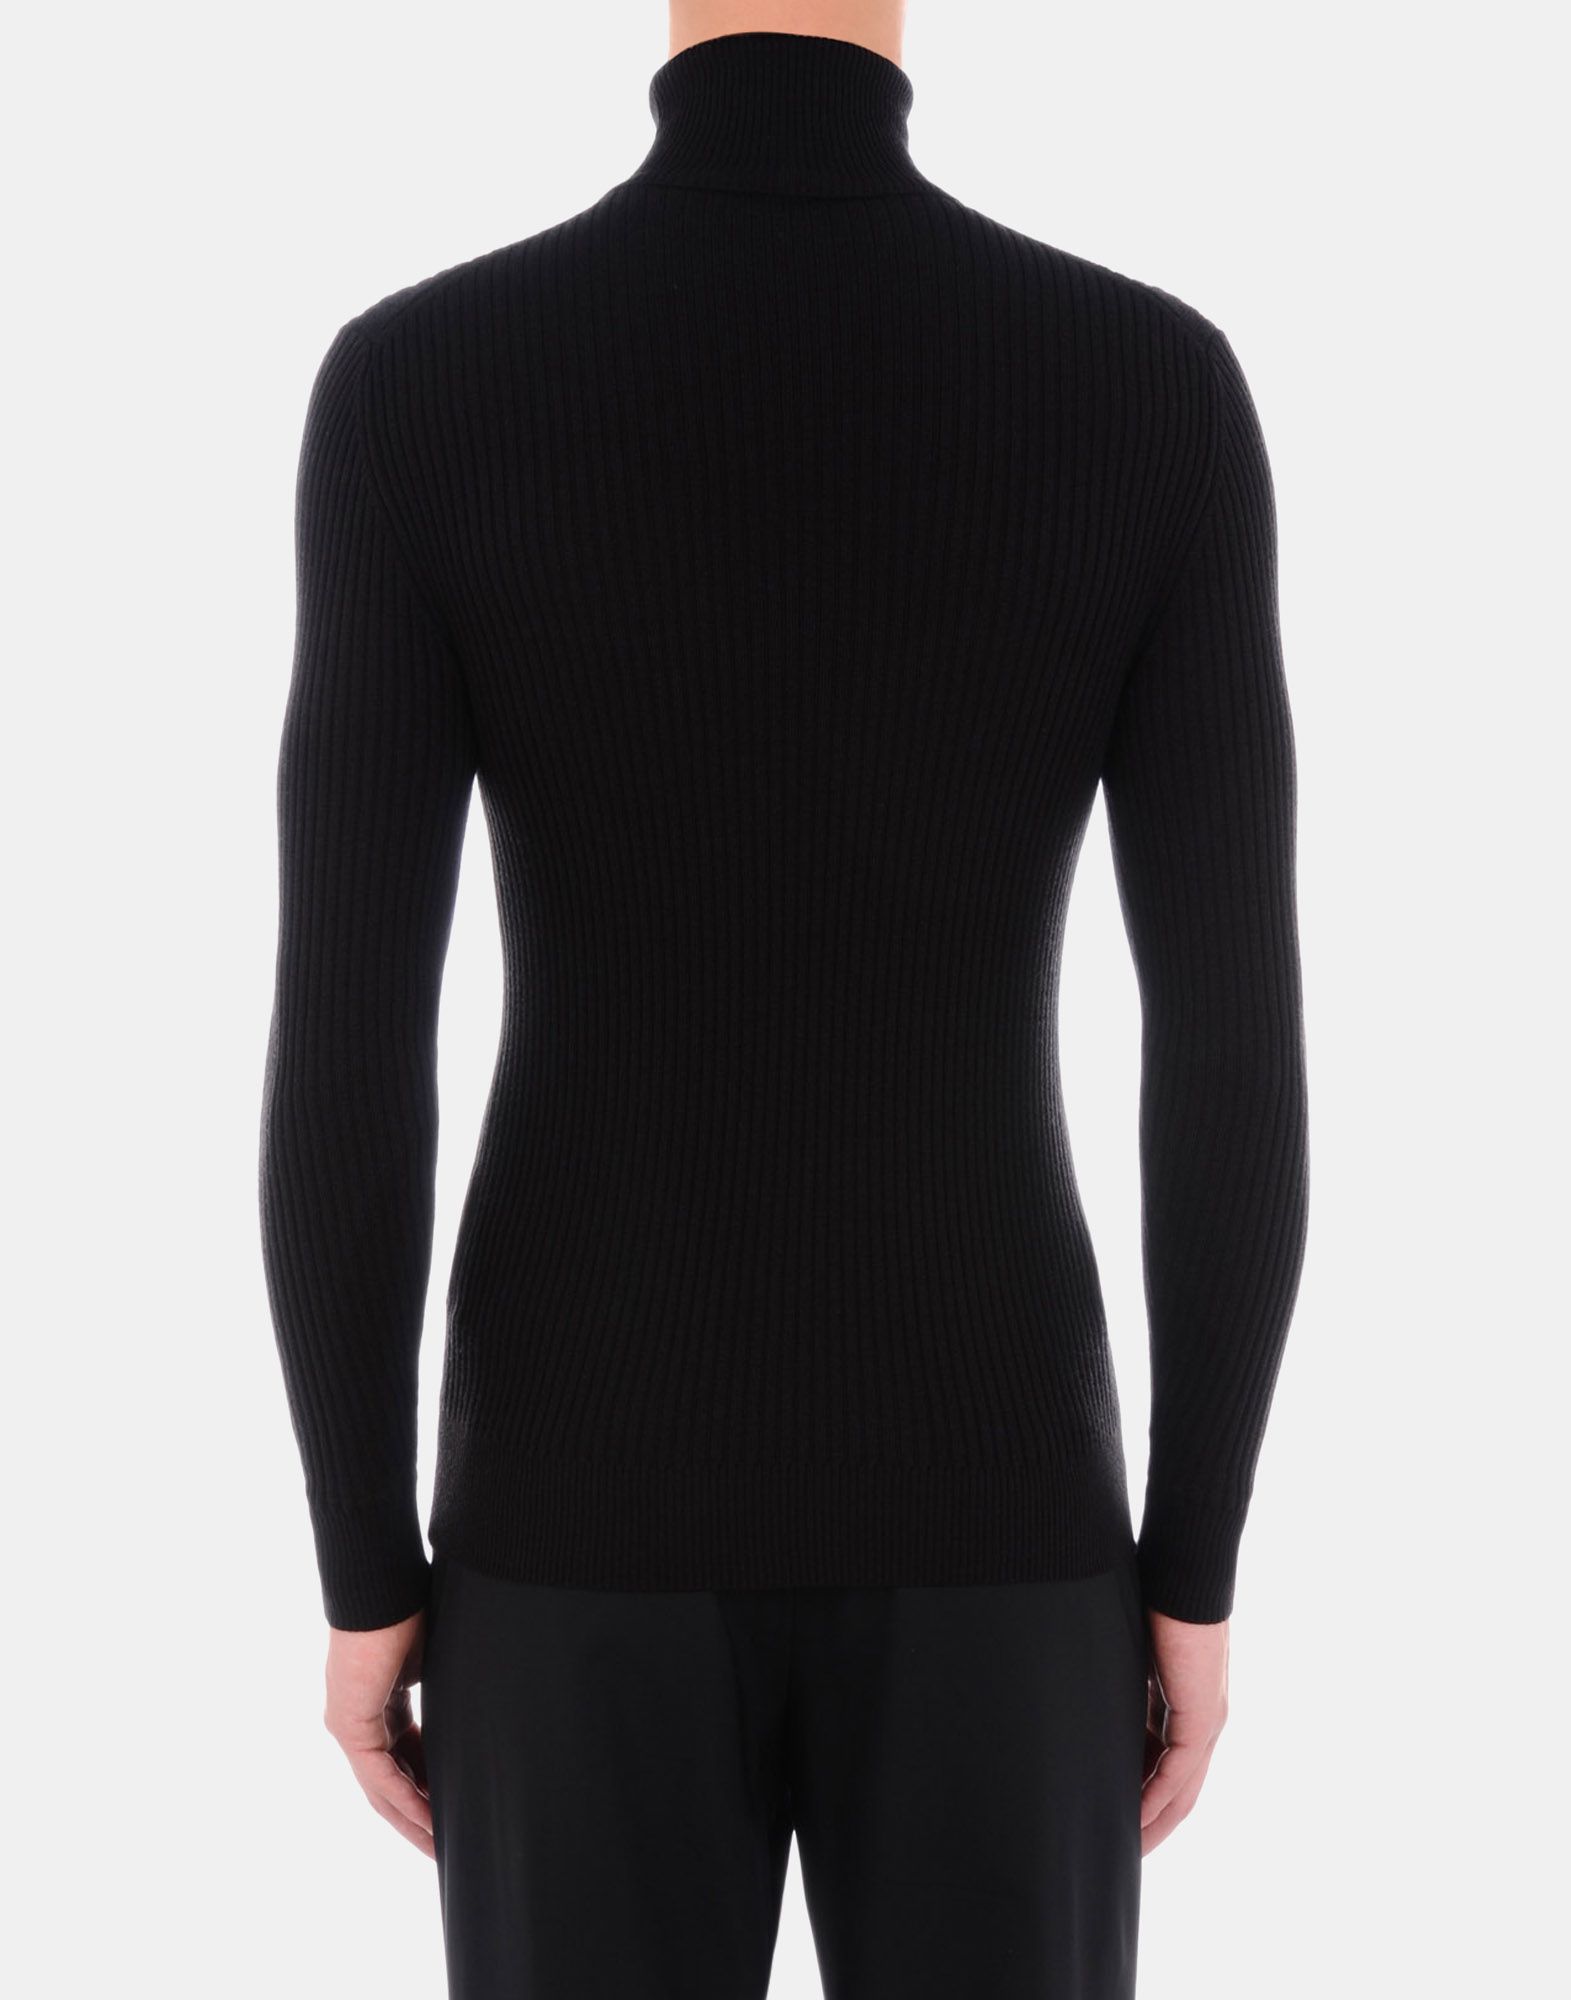 Sweater Men - Knitwear Men on Jil Sander Online Store